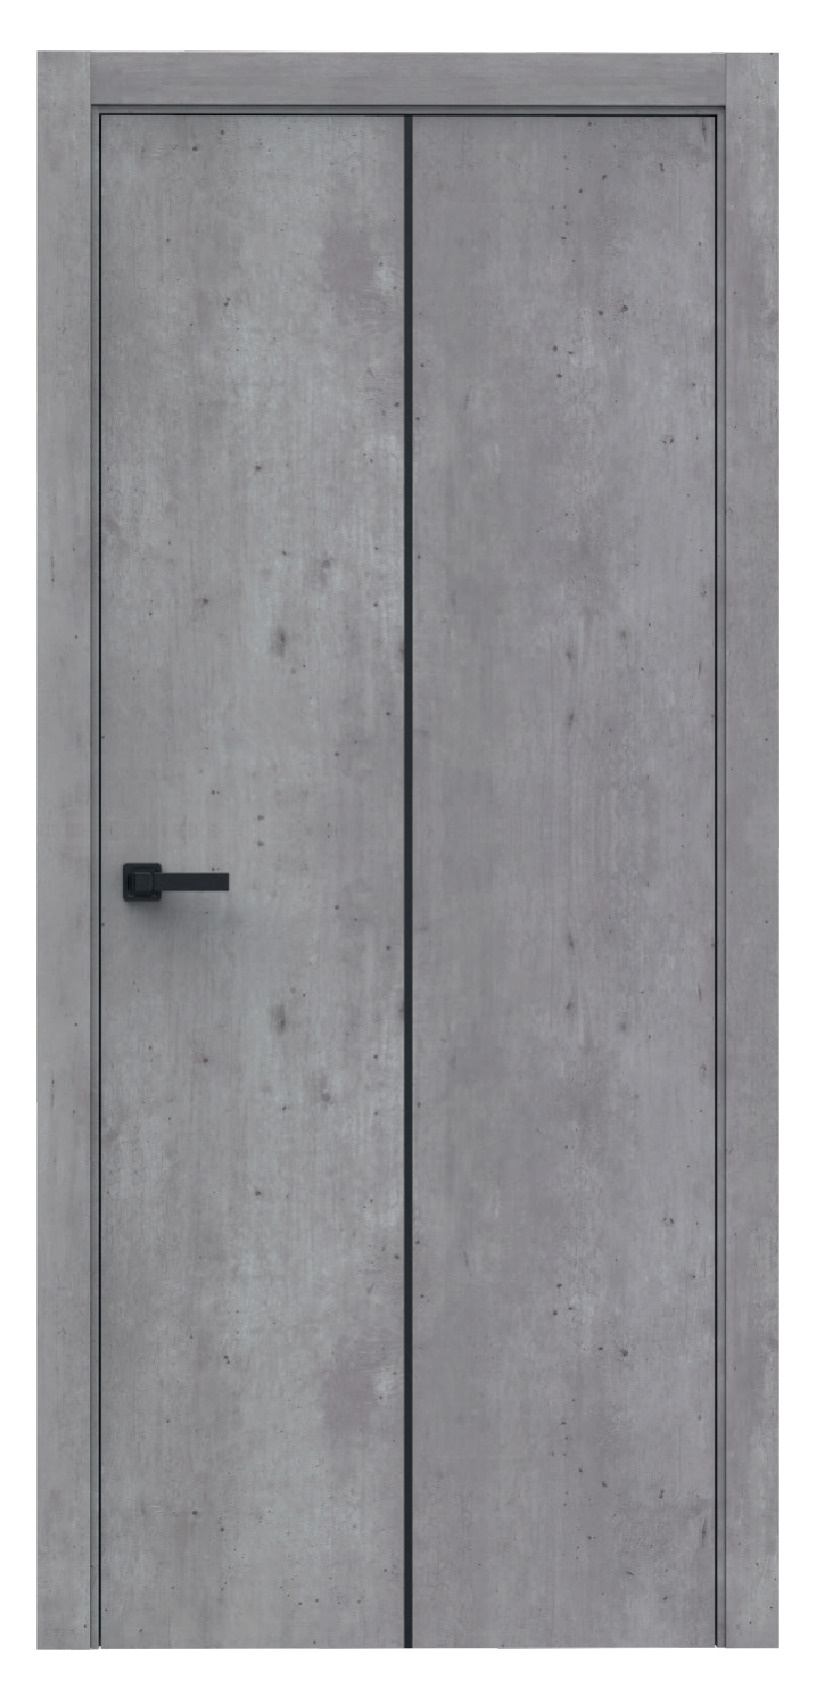 Questdoors Межкомнатная дверь QMA7 с молдингом, арт. 17790 - фото №1